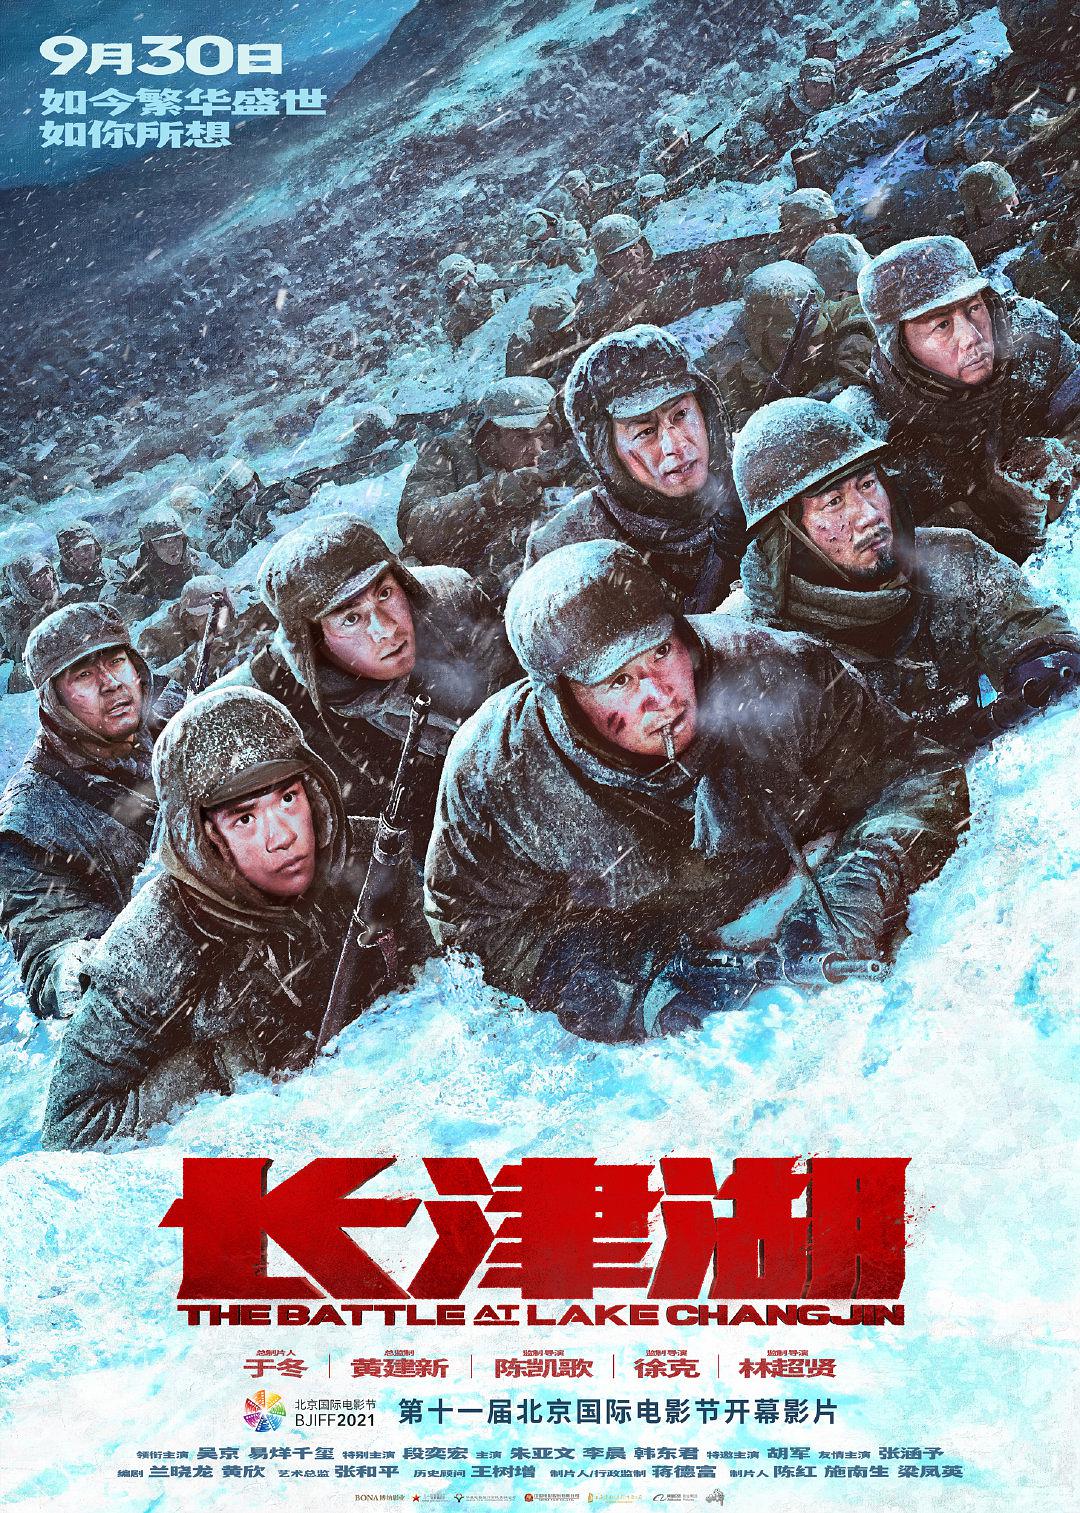 长津湖/冰雪长津湖/抗美援朝/长津湖之战 (2021) 国语中字原盘 The Battle at Lake Changjin 2021 Blu-ray 1080p AVC TrueHD 5.1 - MTeam    [44.39 GB]-1.jpg